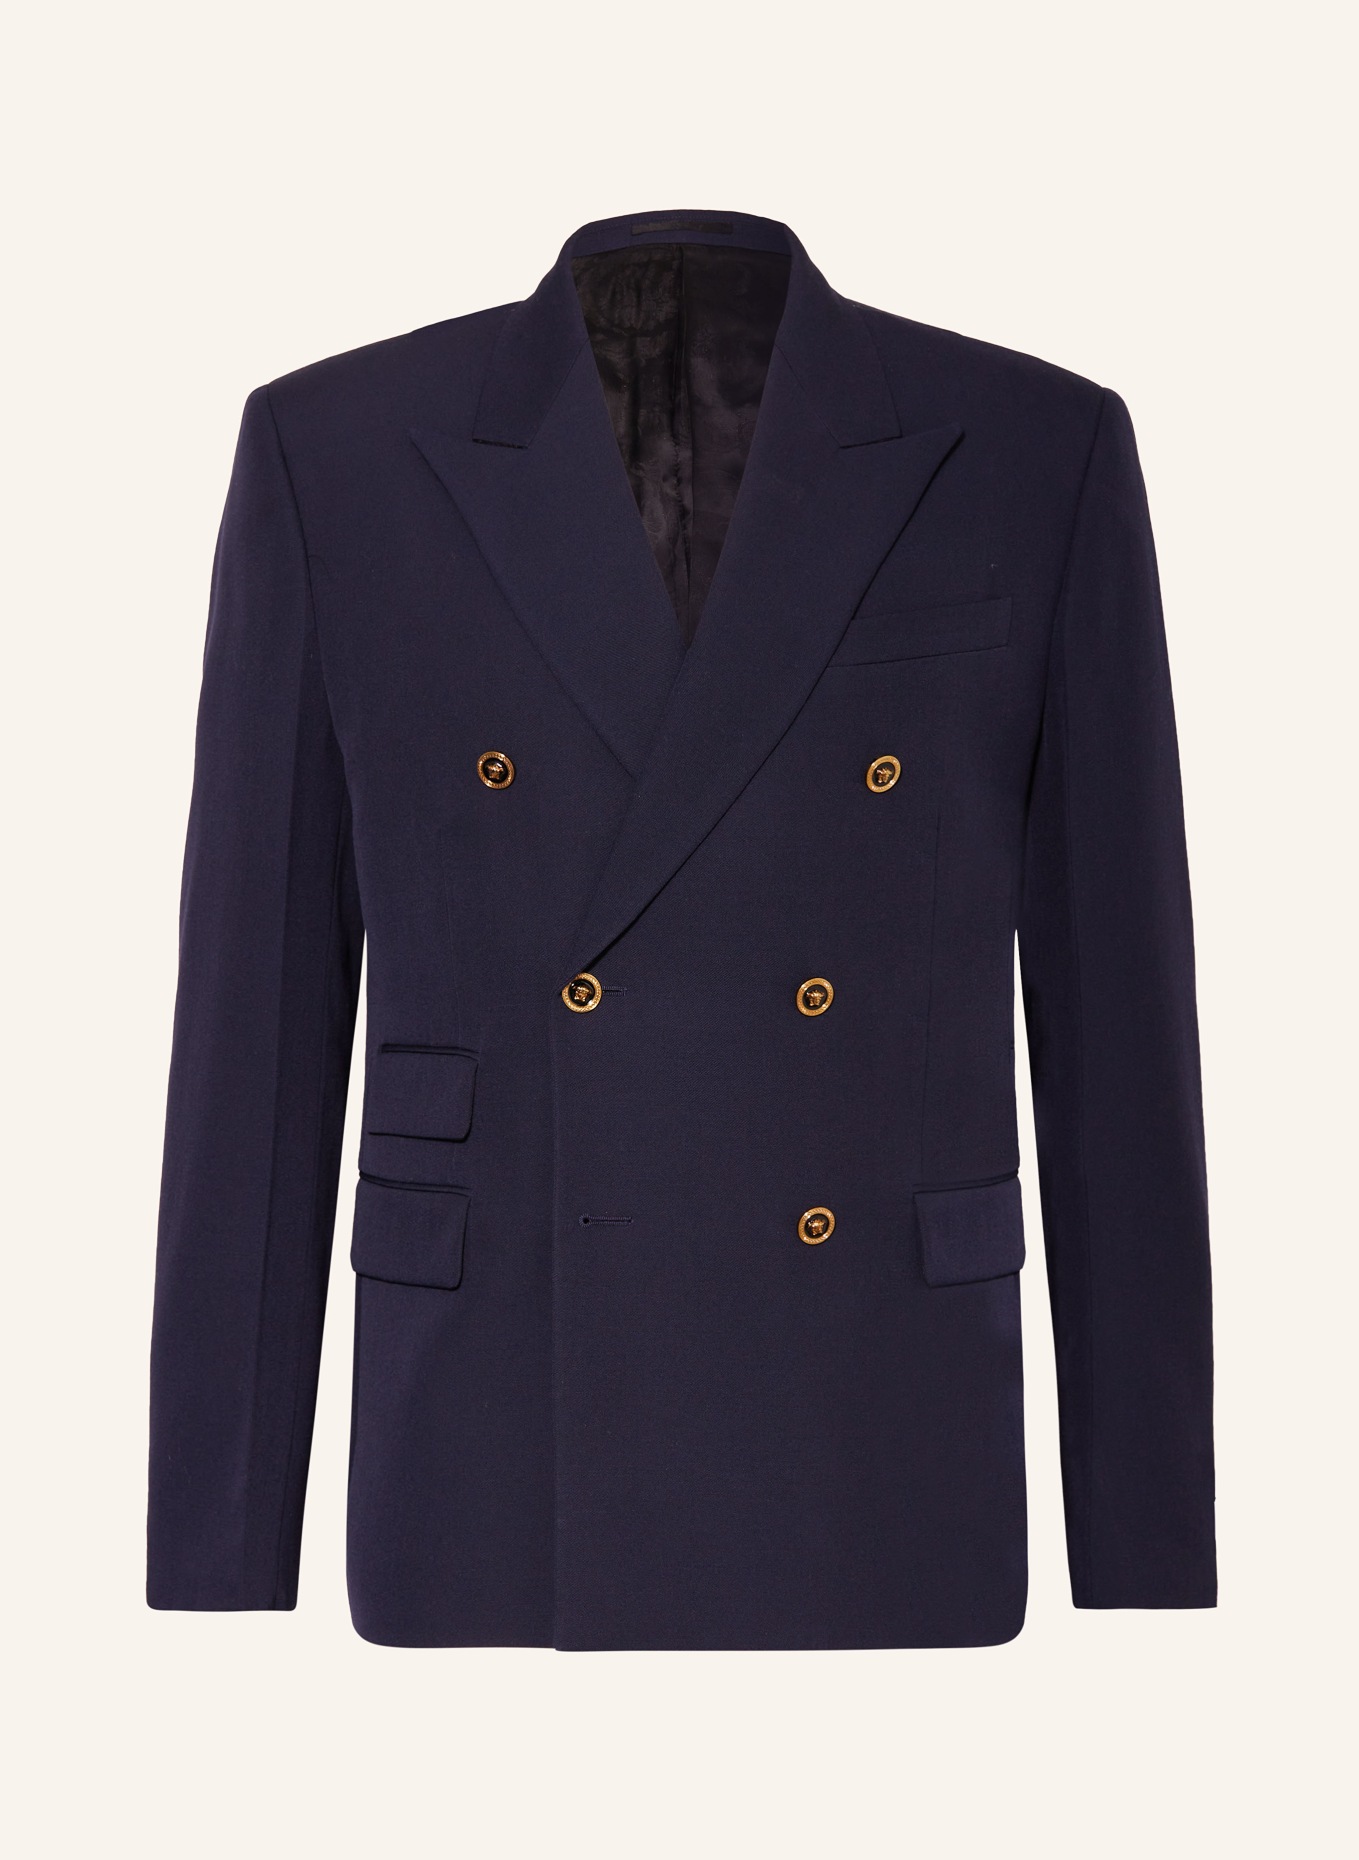 VERSACE Tailored jacket regular fit, Color: DARK BLUE (Image 1)